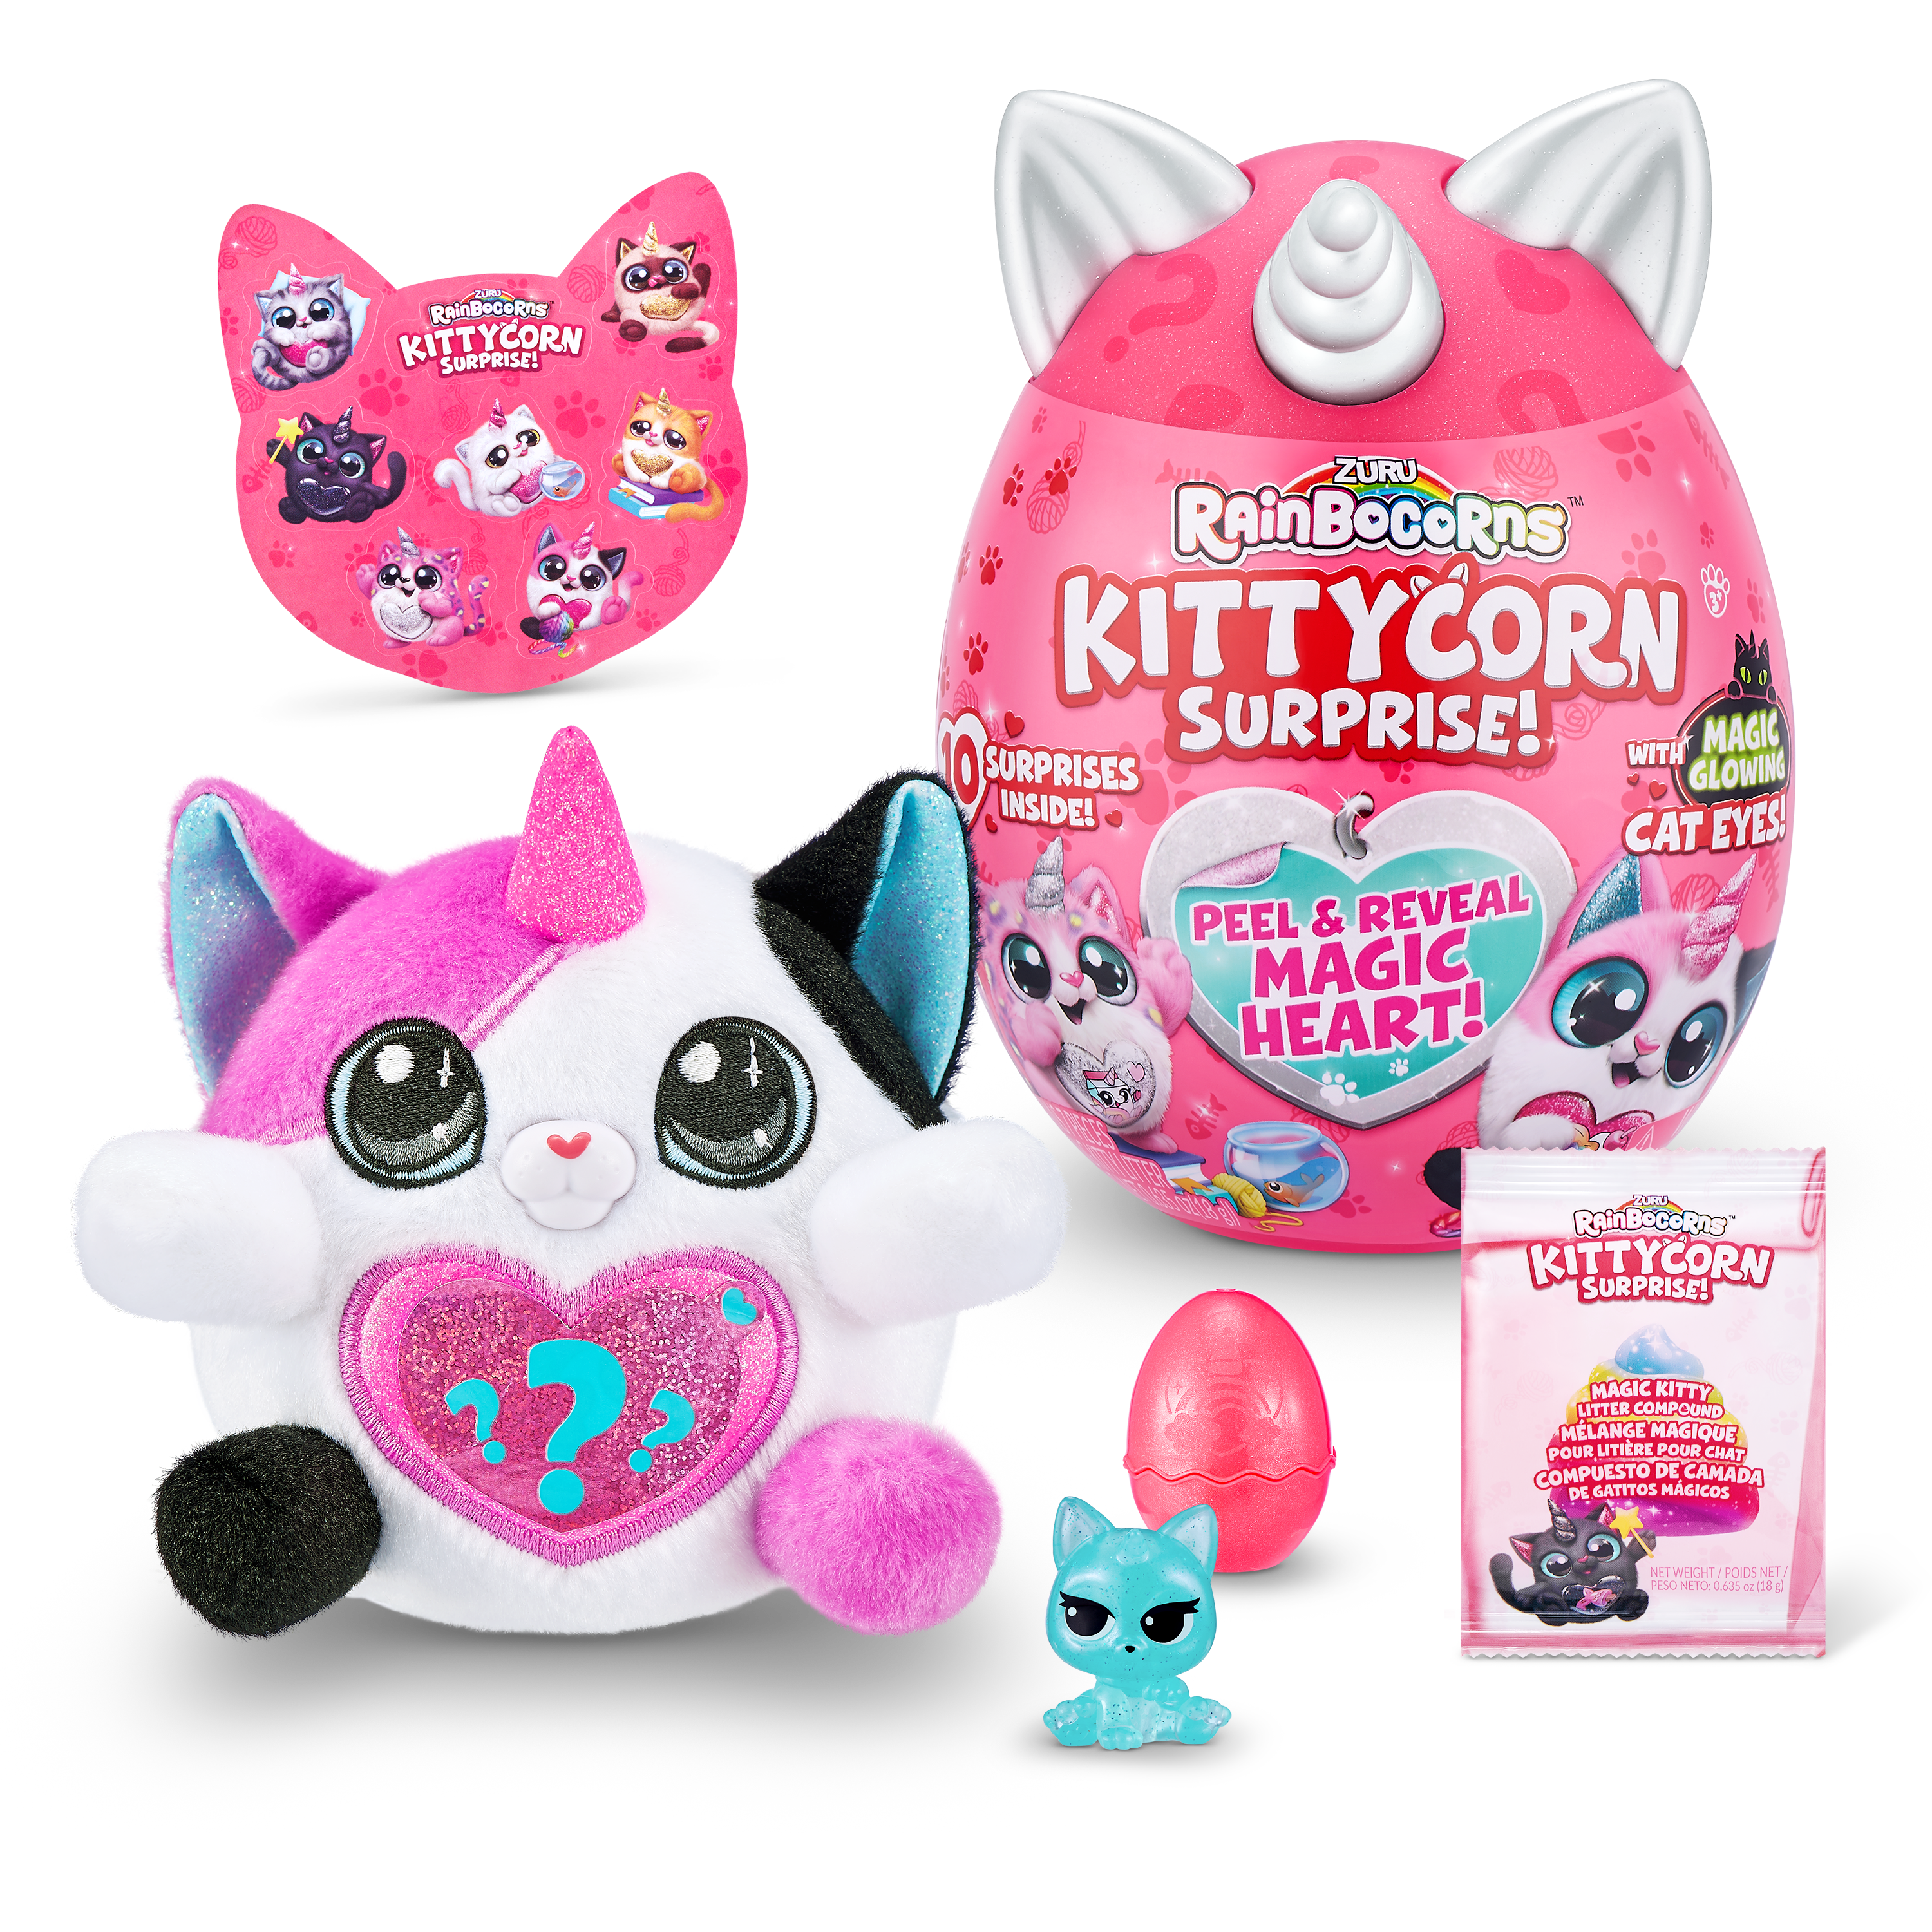 Игровой набор Rainbocorns сюрприз в яйце Kittycorn Surprise (плюшевый котенок, мини питомец в яйце, наклейки, слайм) цвет бело-розовый— магазин-салютов.рус